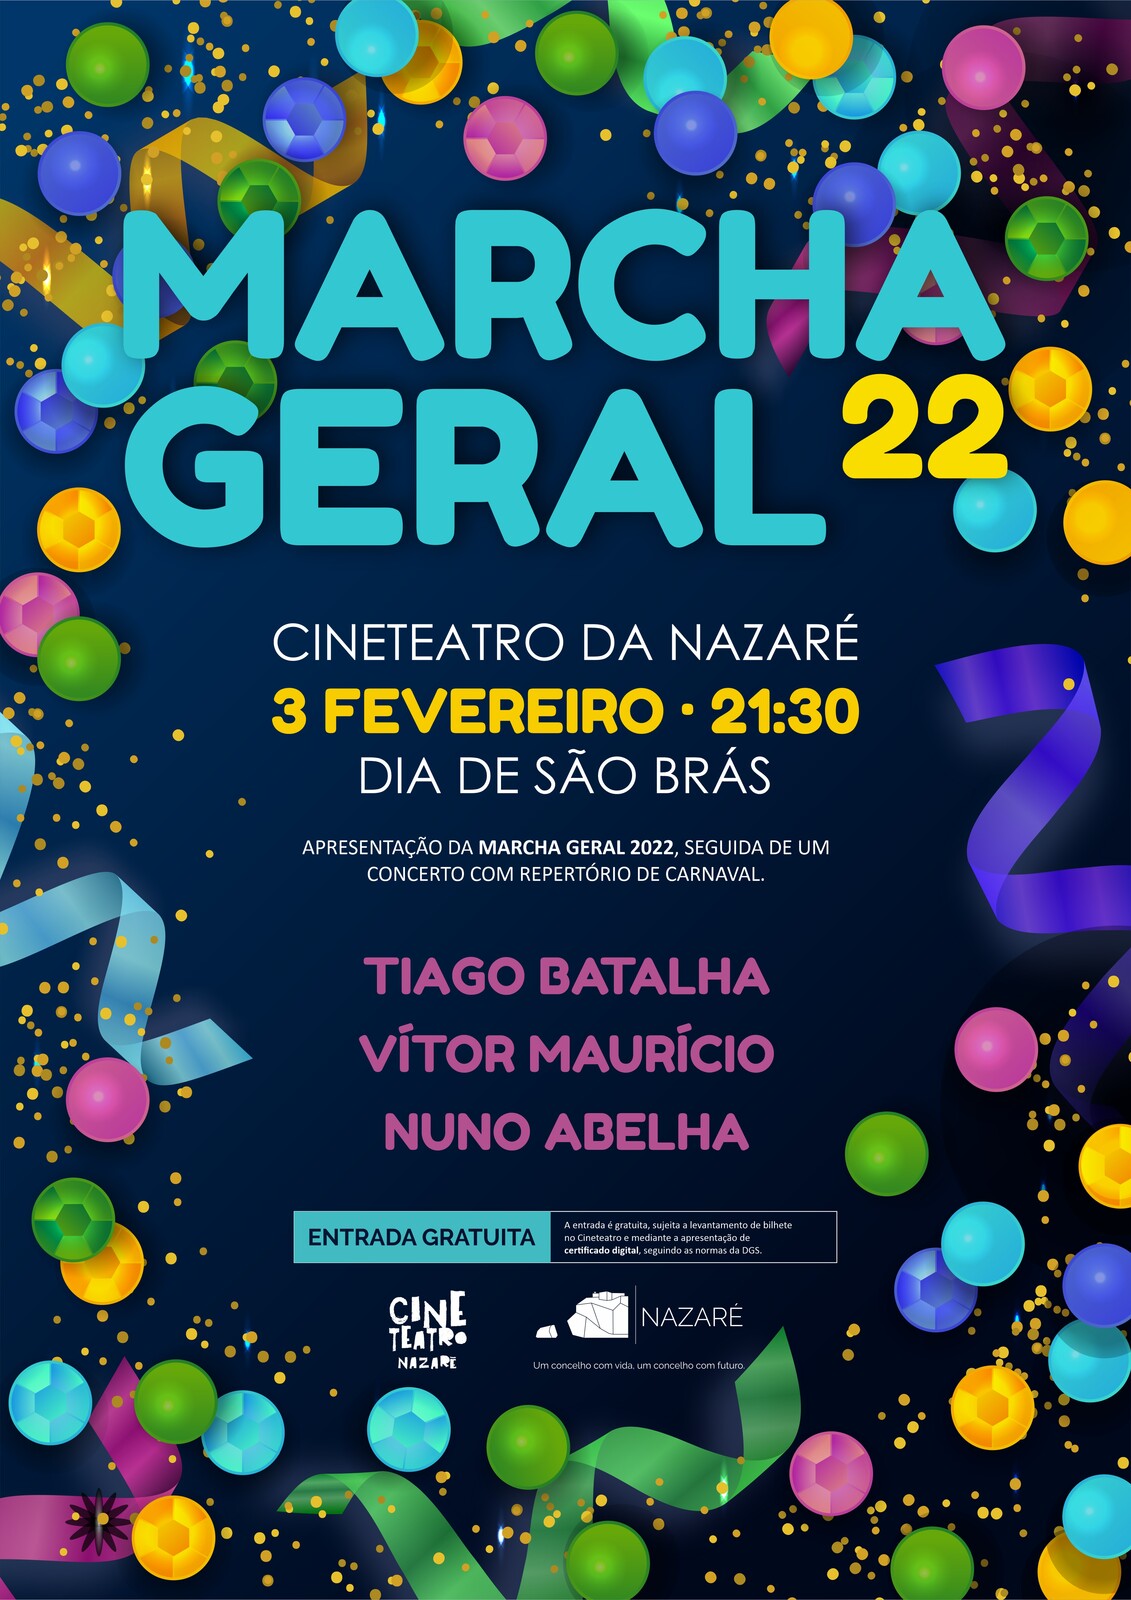 Apresentação da Marcha Geral do Carnaval 2022